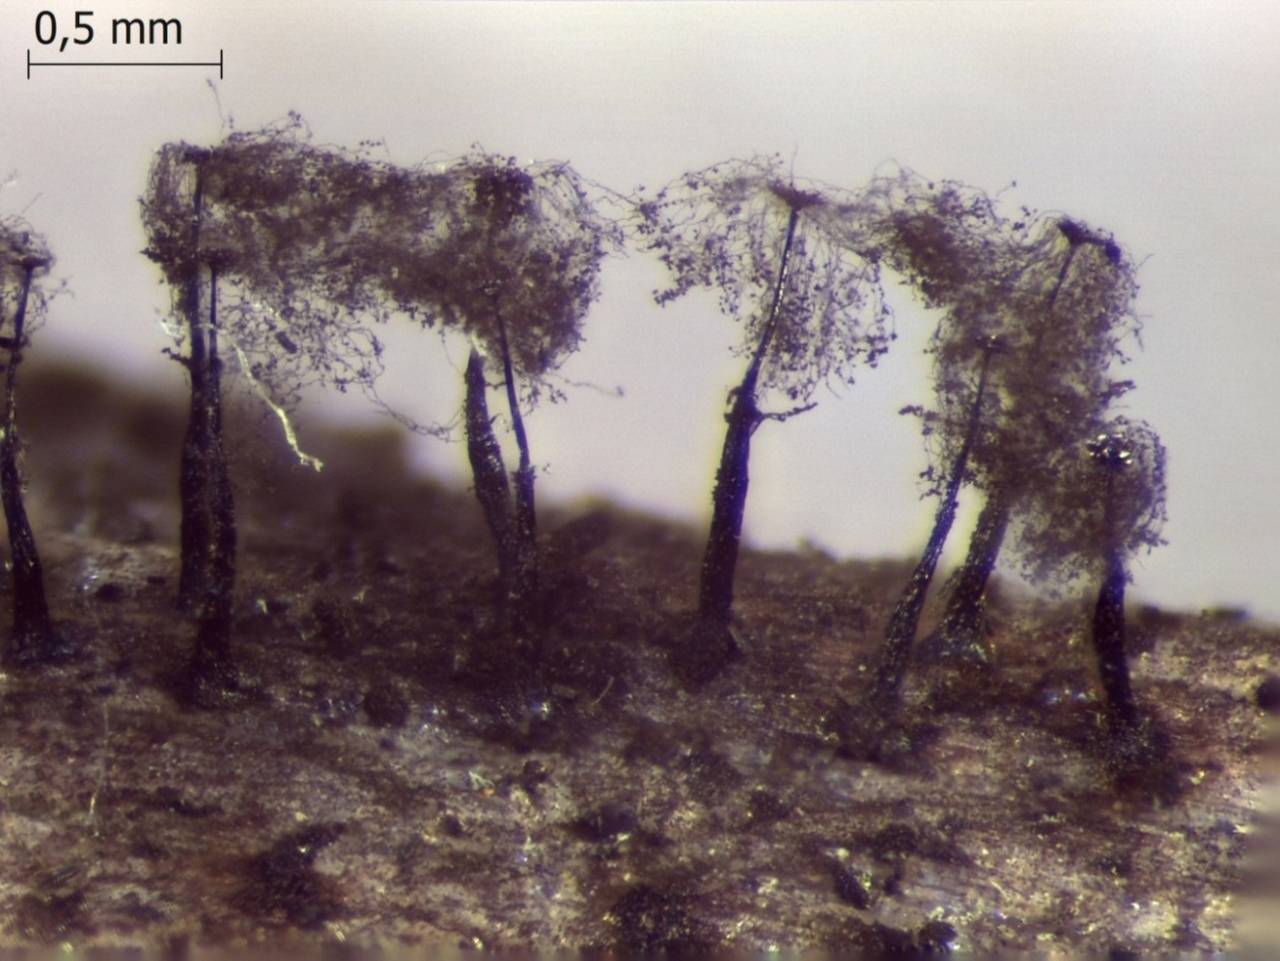 Enerthenema papillatum внешний вид спороношения после рассеивания спор, Нелидовский, Тверская область (Россия)